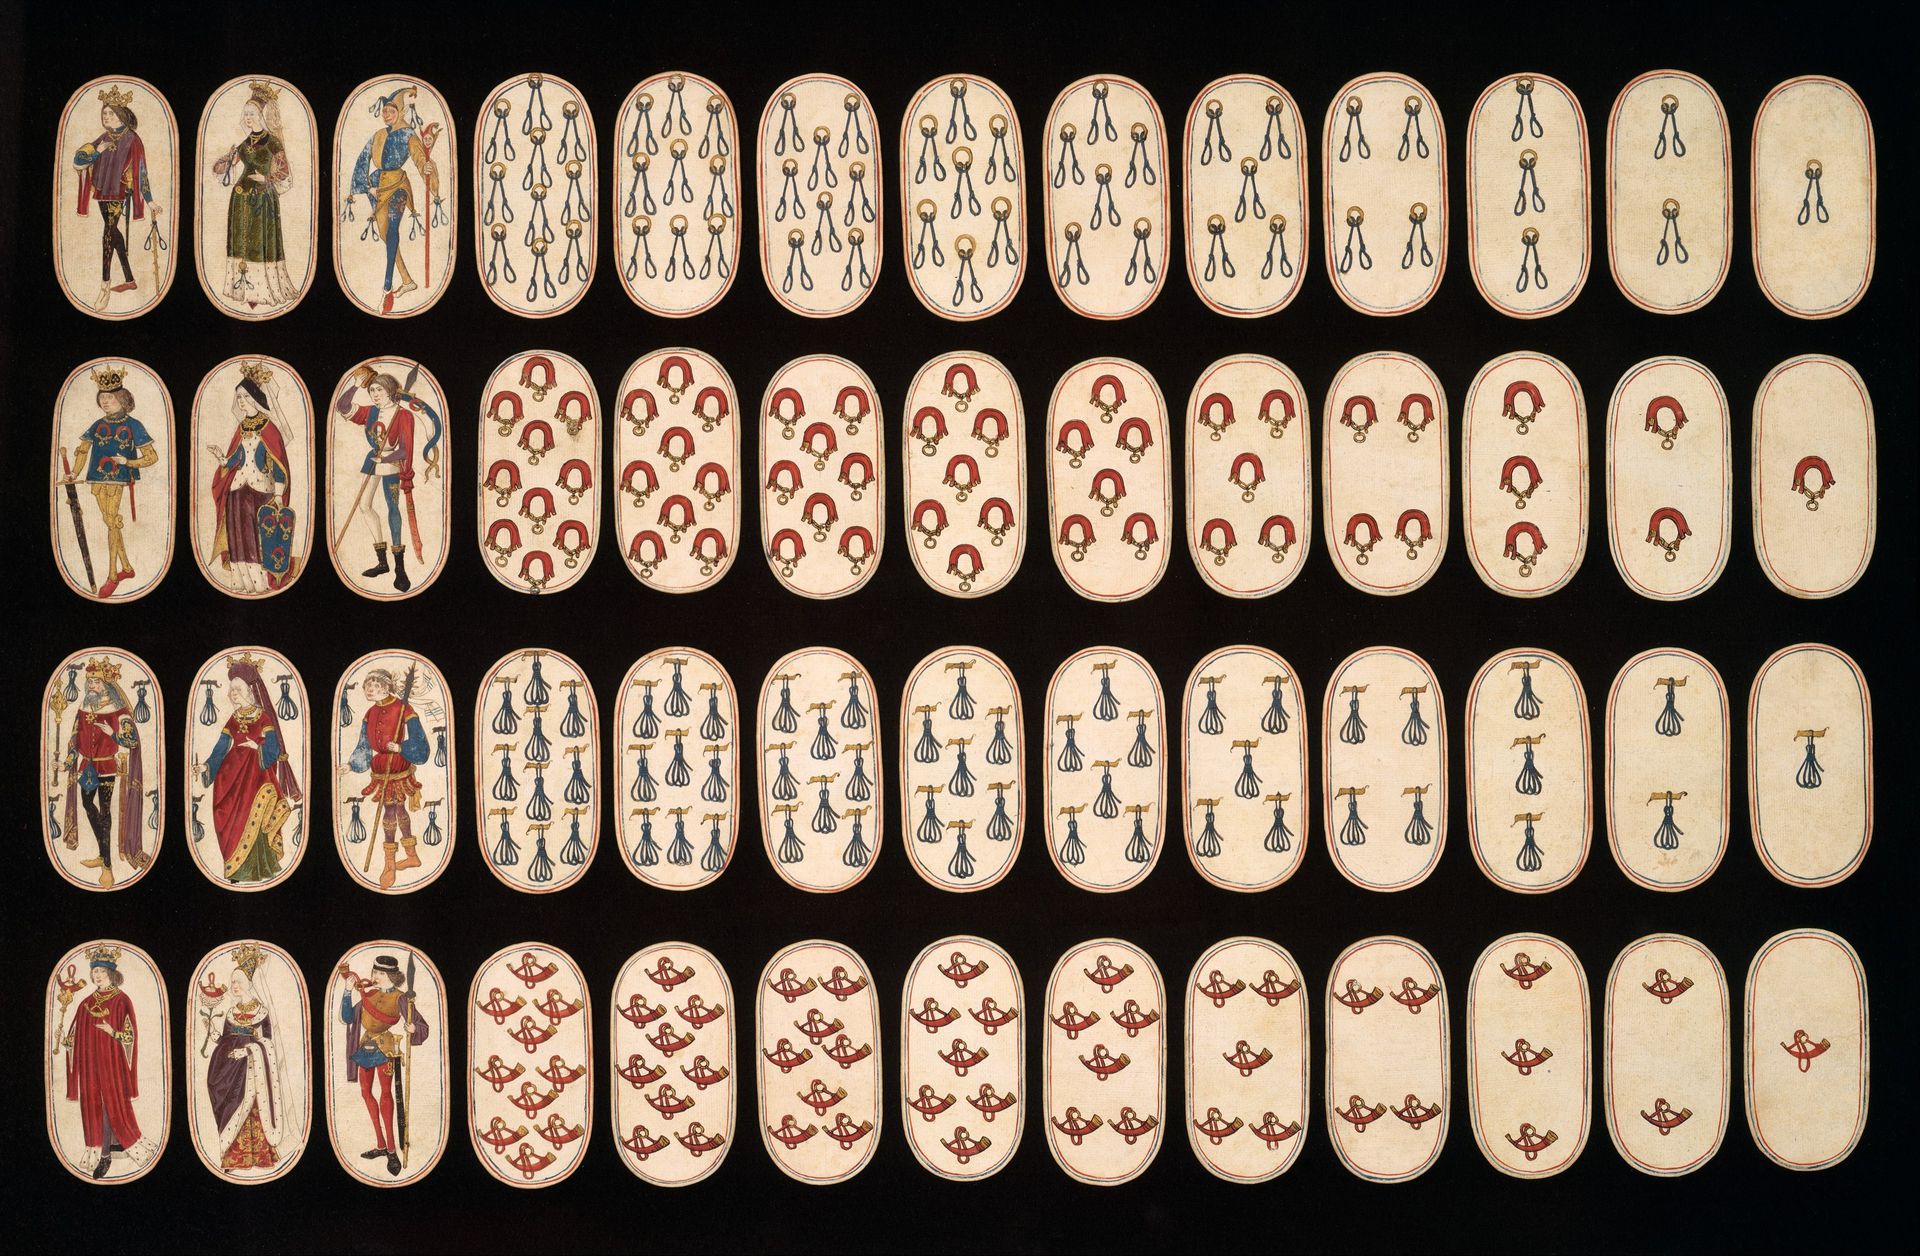 wiel Oude tijden Ademen Het kaartspel werd vroeger gezien als duivels vermaak - NRC